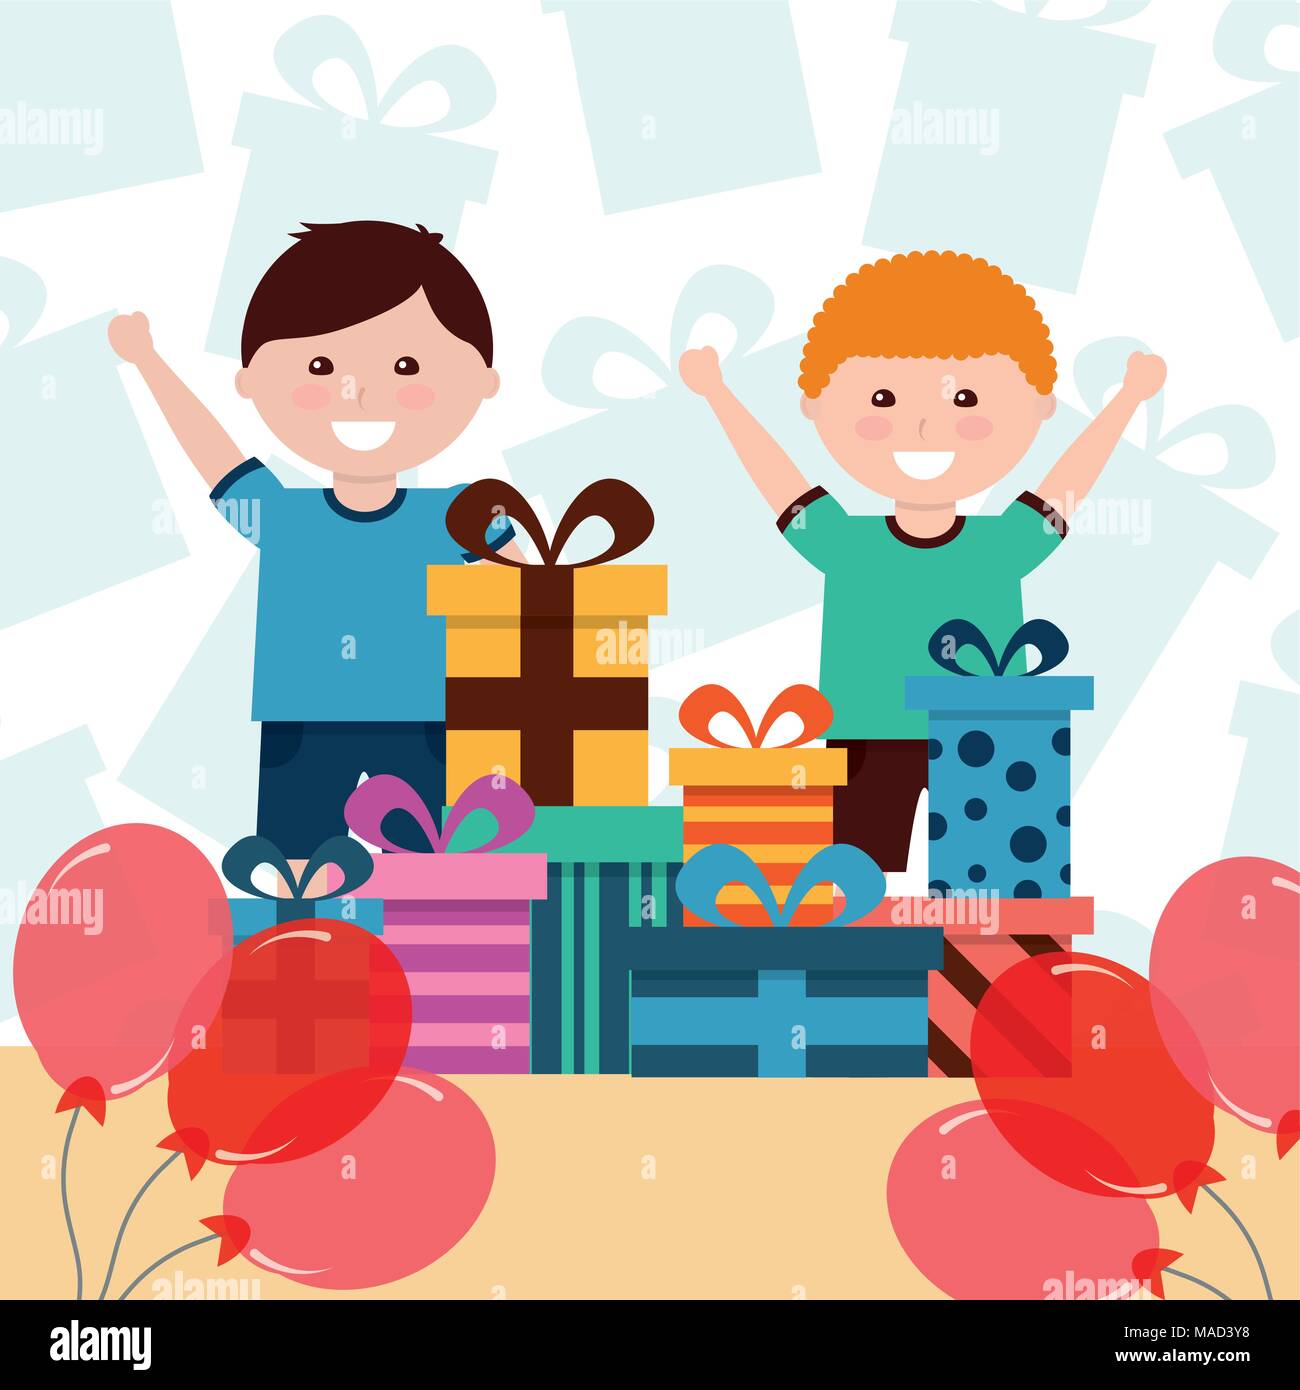 Kleine Jungen Lustig Gestapelt Geschenke Und Ballons Deko Kids Alles Gute Zum Geburtstag Stock Vektorgrafik Alamy